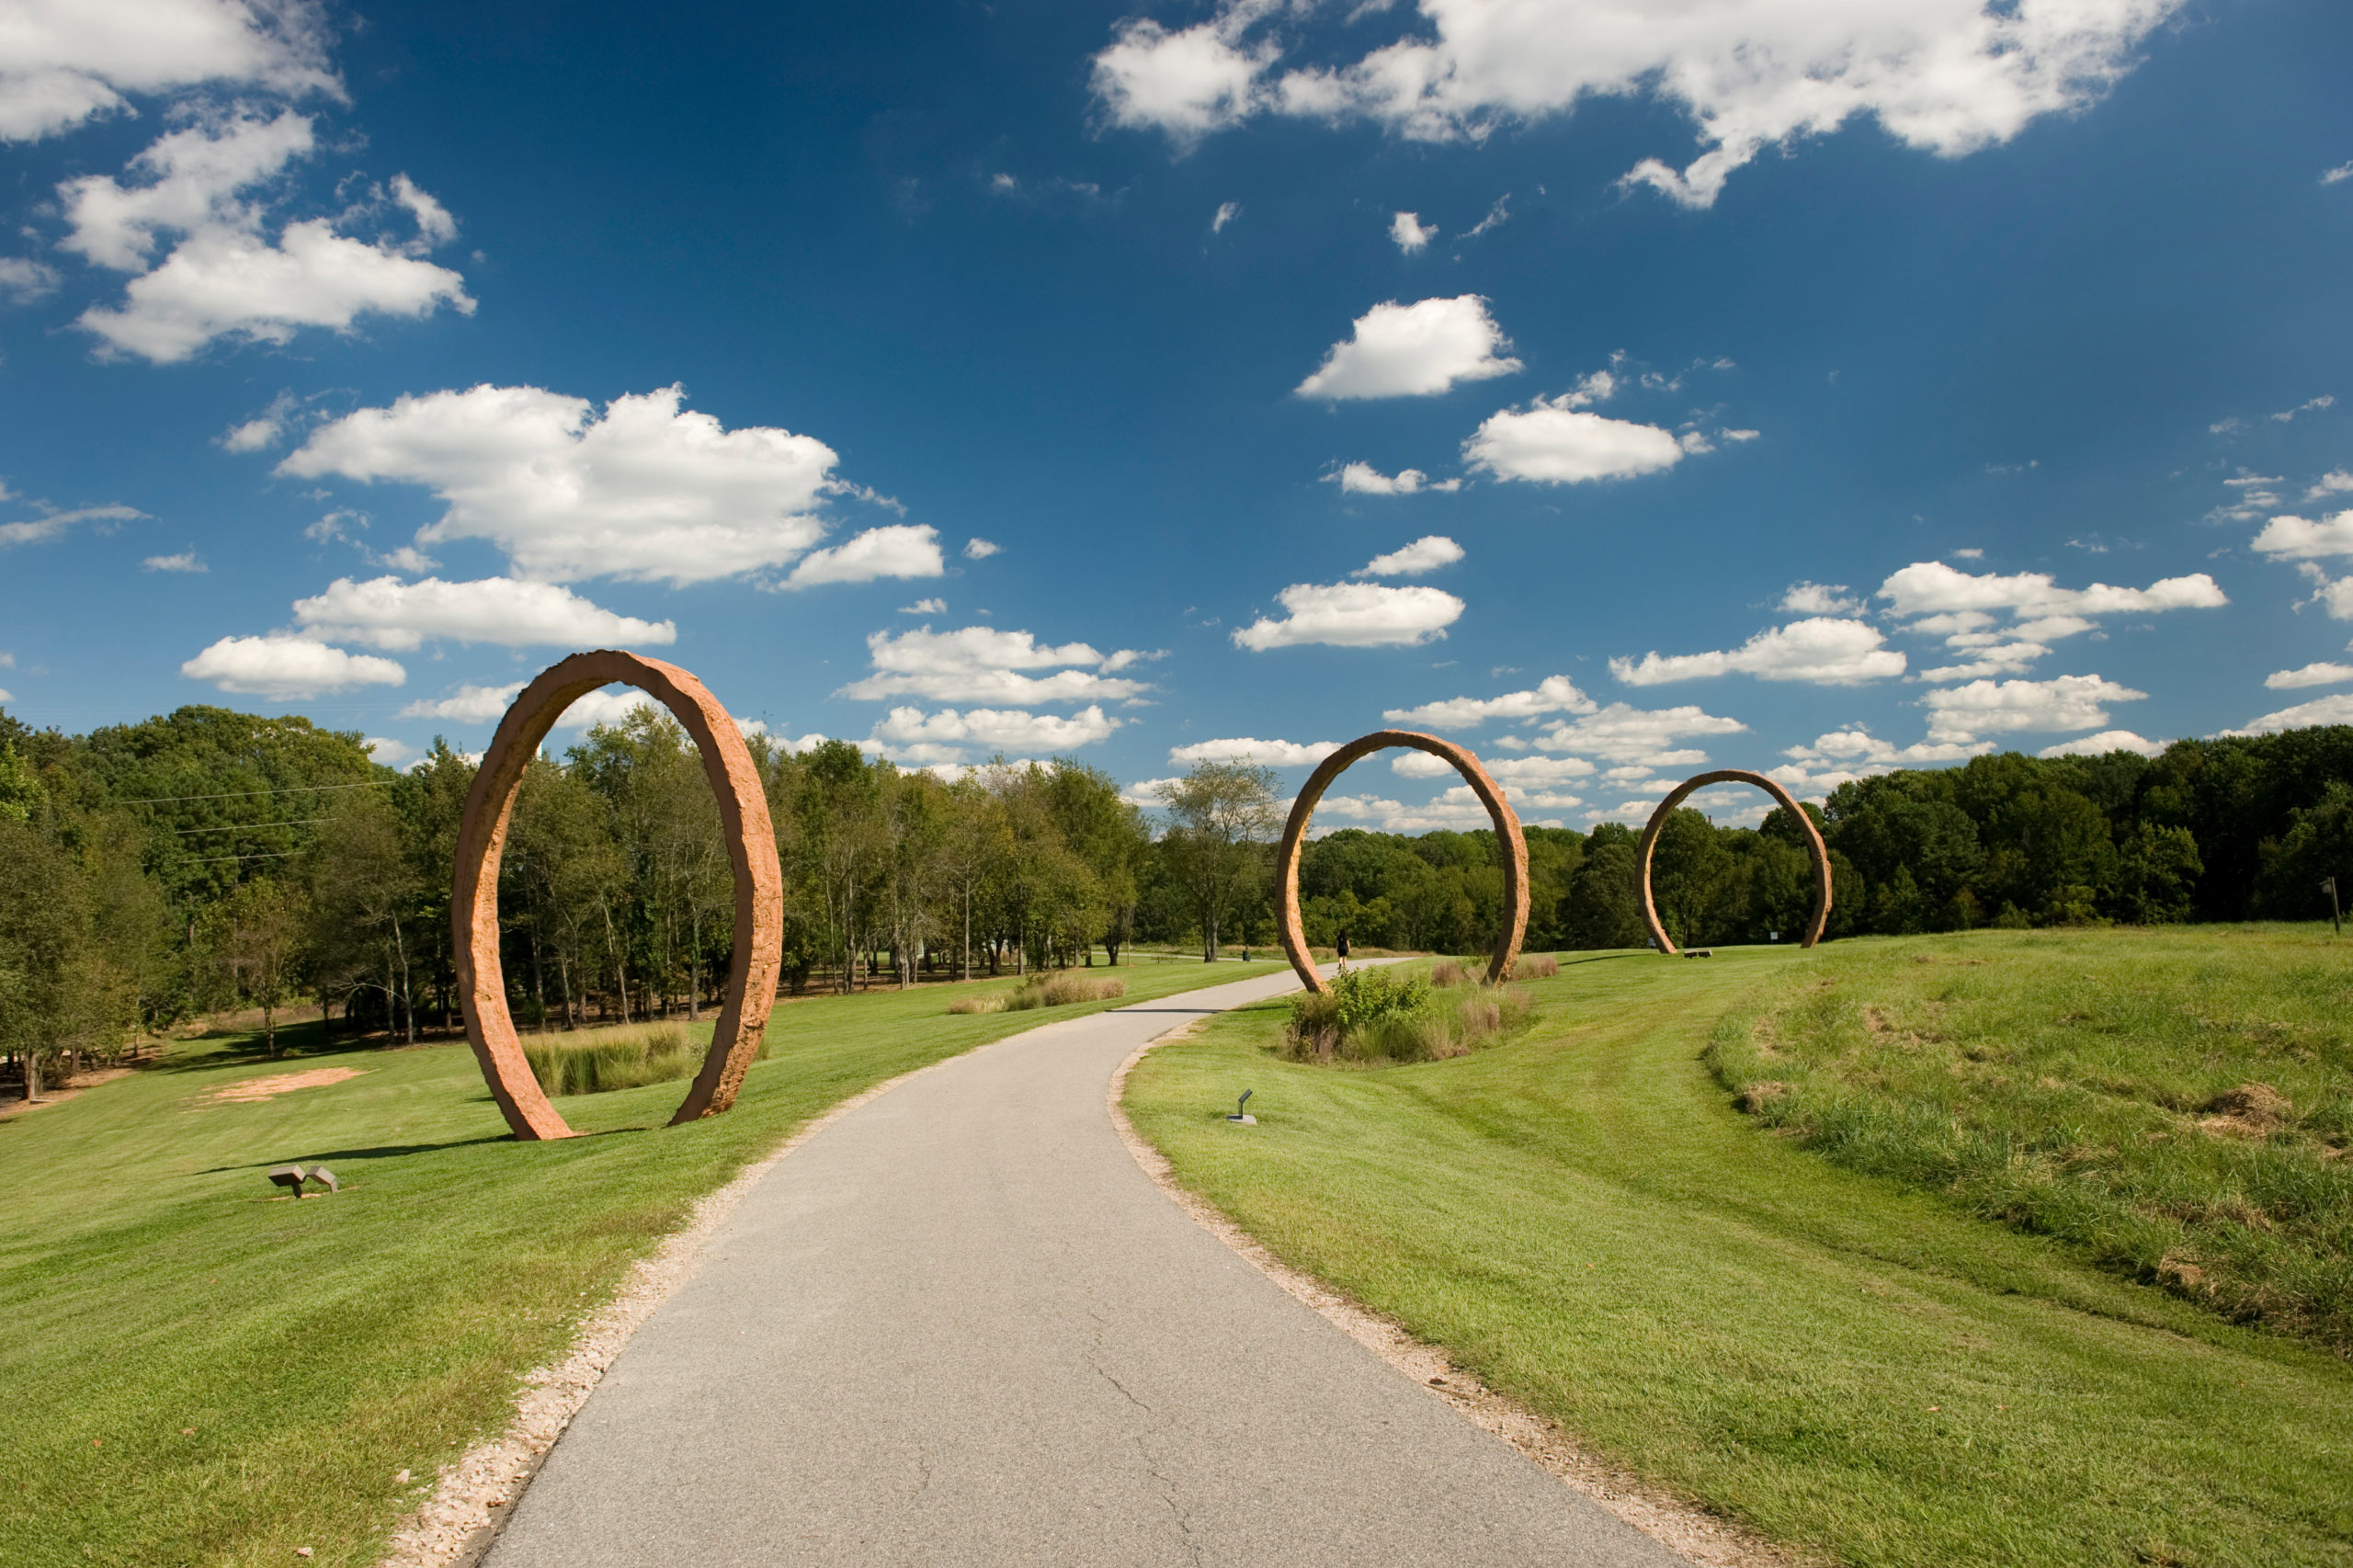 Circular art installations in park